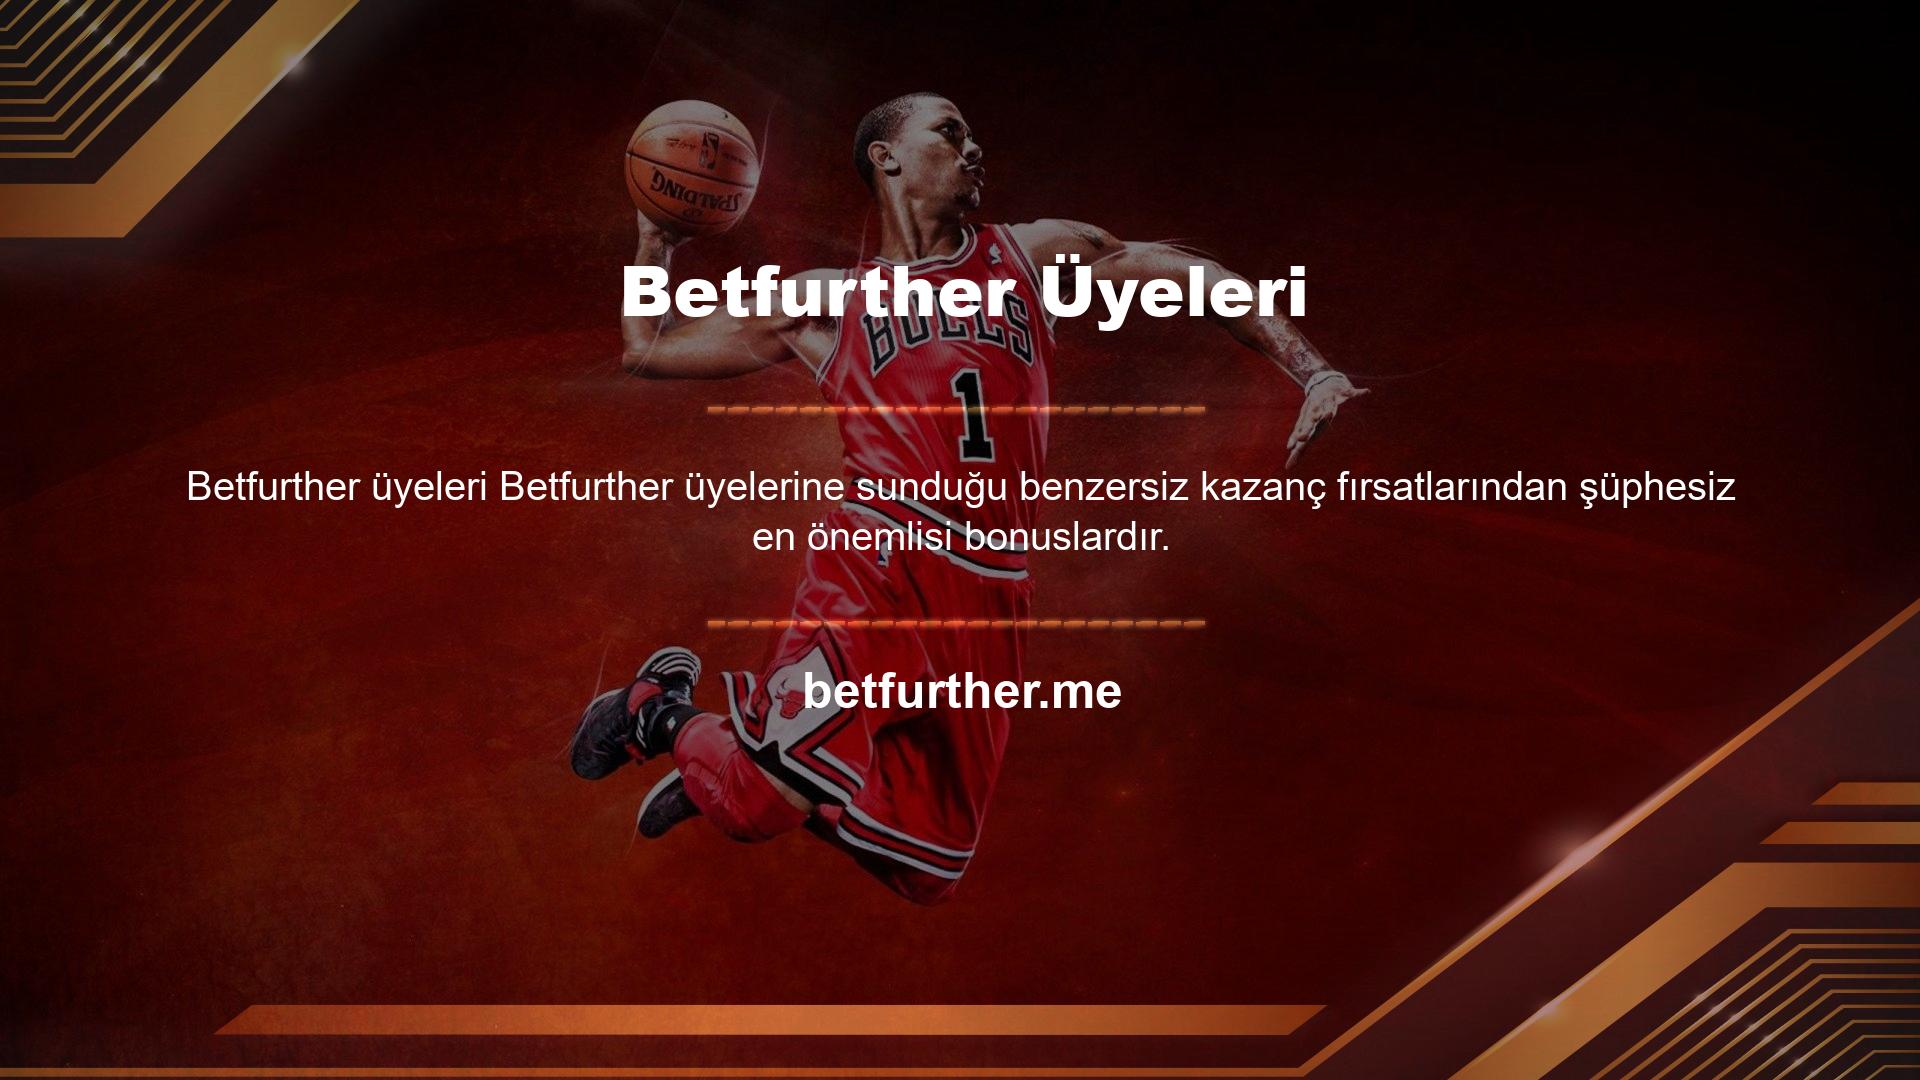 Betfurther üyeleri , para kazanmak isteyen oyunculara önemli finansal destek sağlar